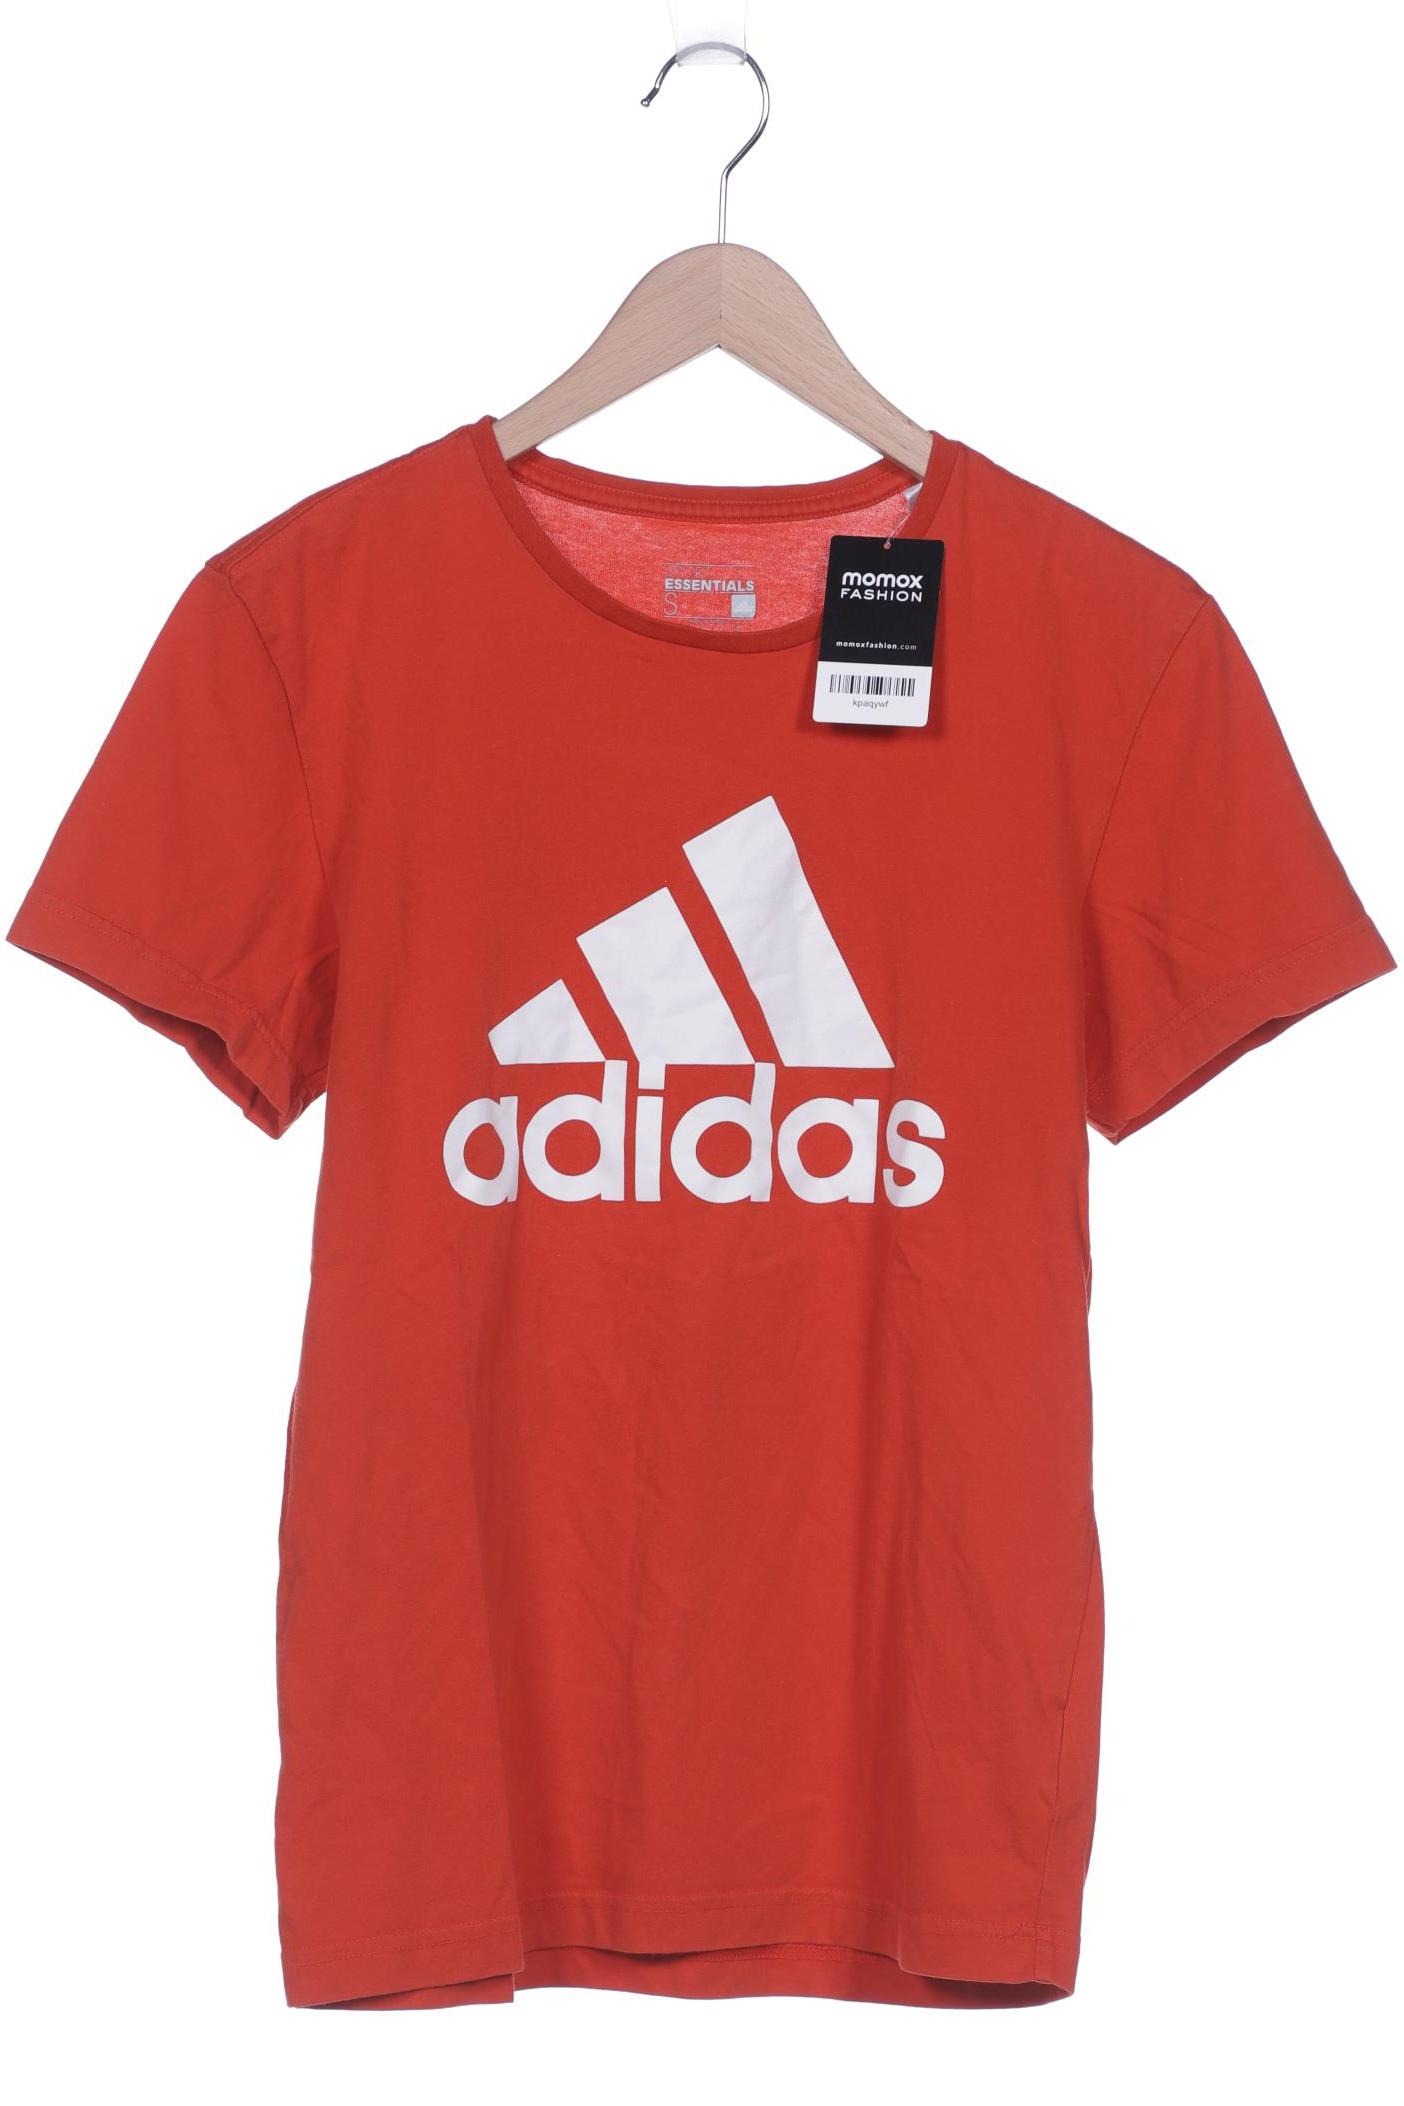 adidas Herren T-Shirt, rot von Adidas